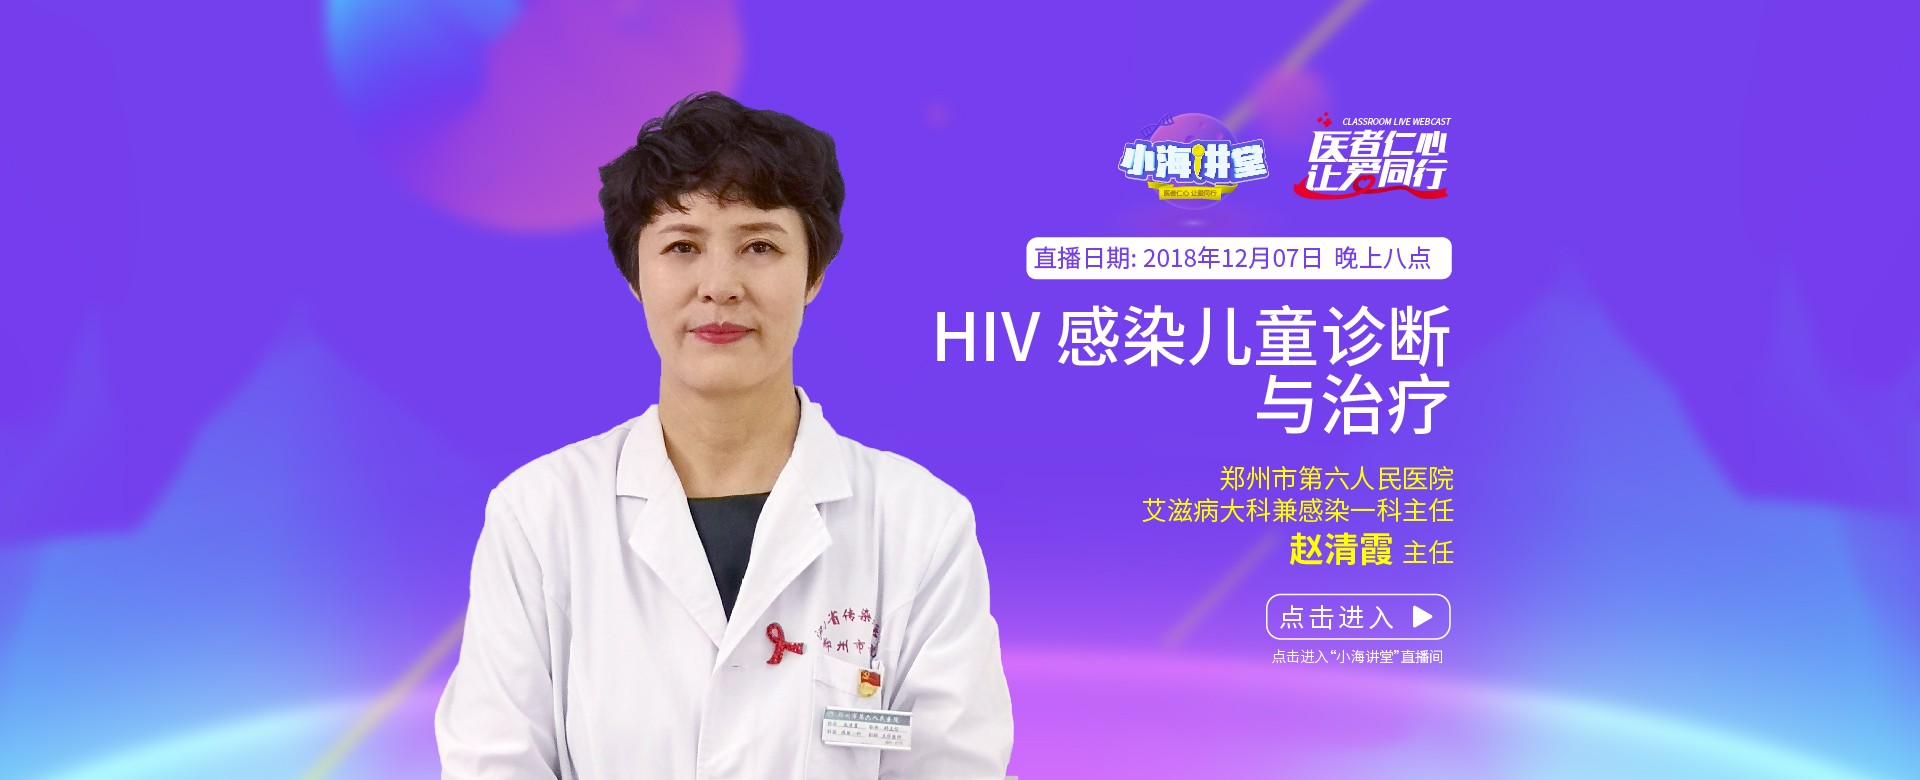 郑州市第六人民医院、艾滋病大科兼感染一科主任 赵清霞，于小海讲堂13期《HIV感染儿童诊断与治疗》分享